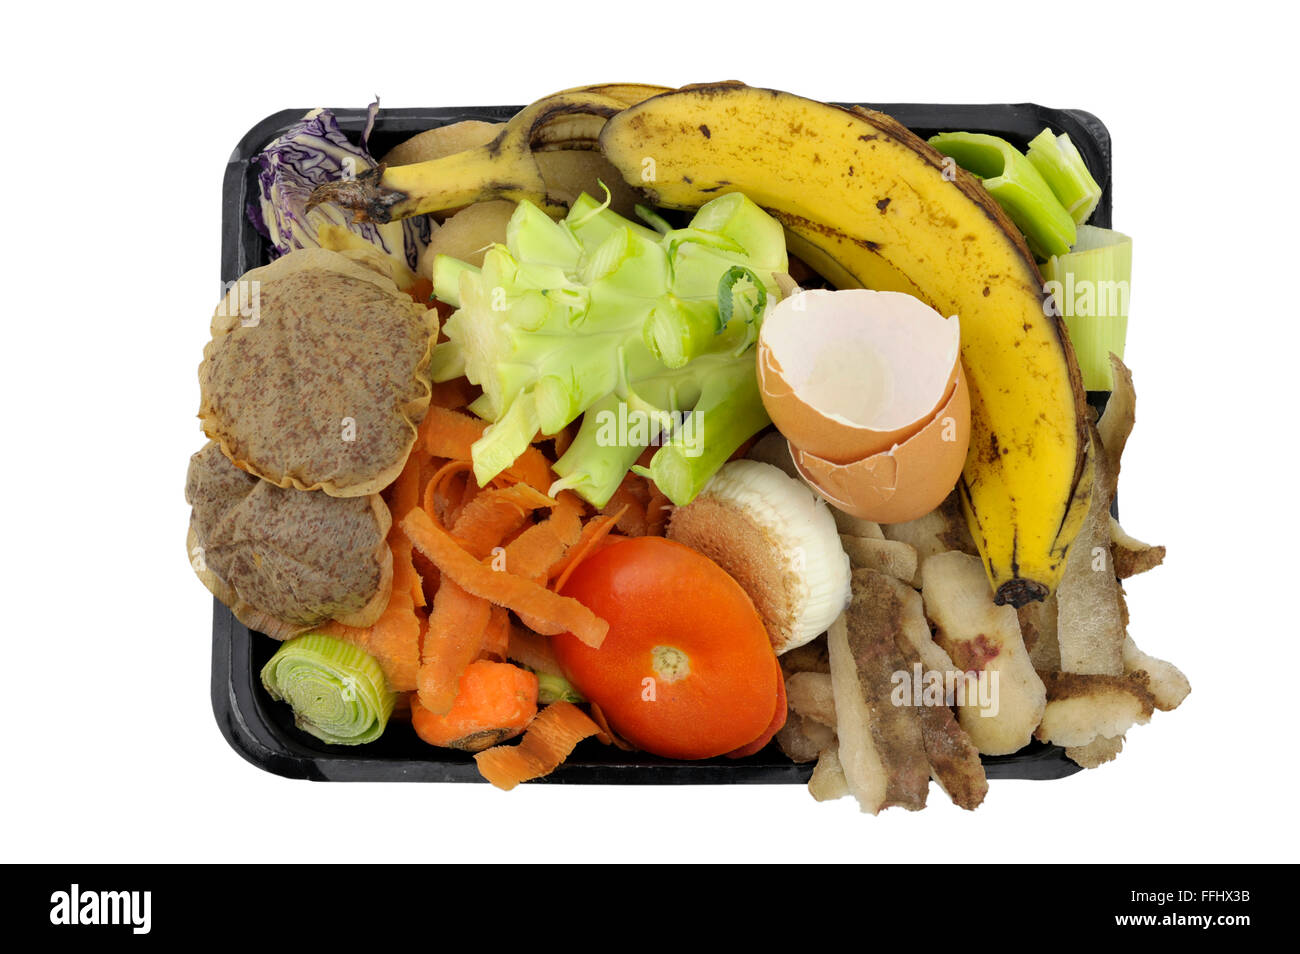 Vegetali, frutta cucina domestici rifiuti alimentari, raccolti in ri-imballaggi usati per compostaggio domestico o aggiunta di wormery. Foto Stock